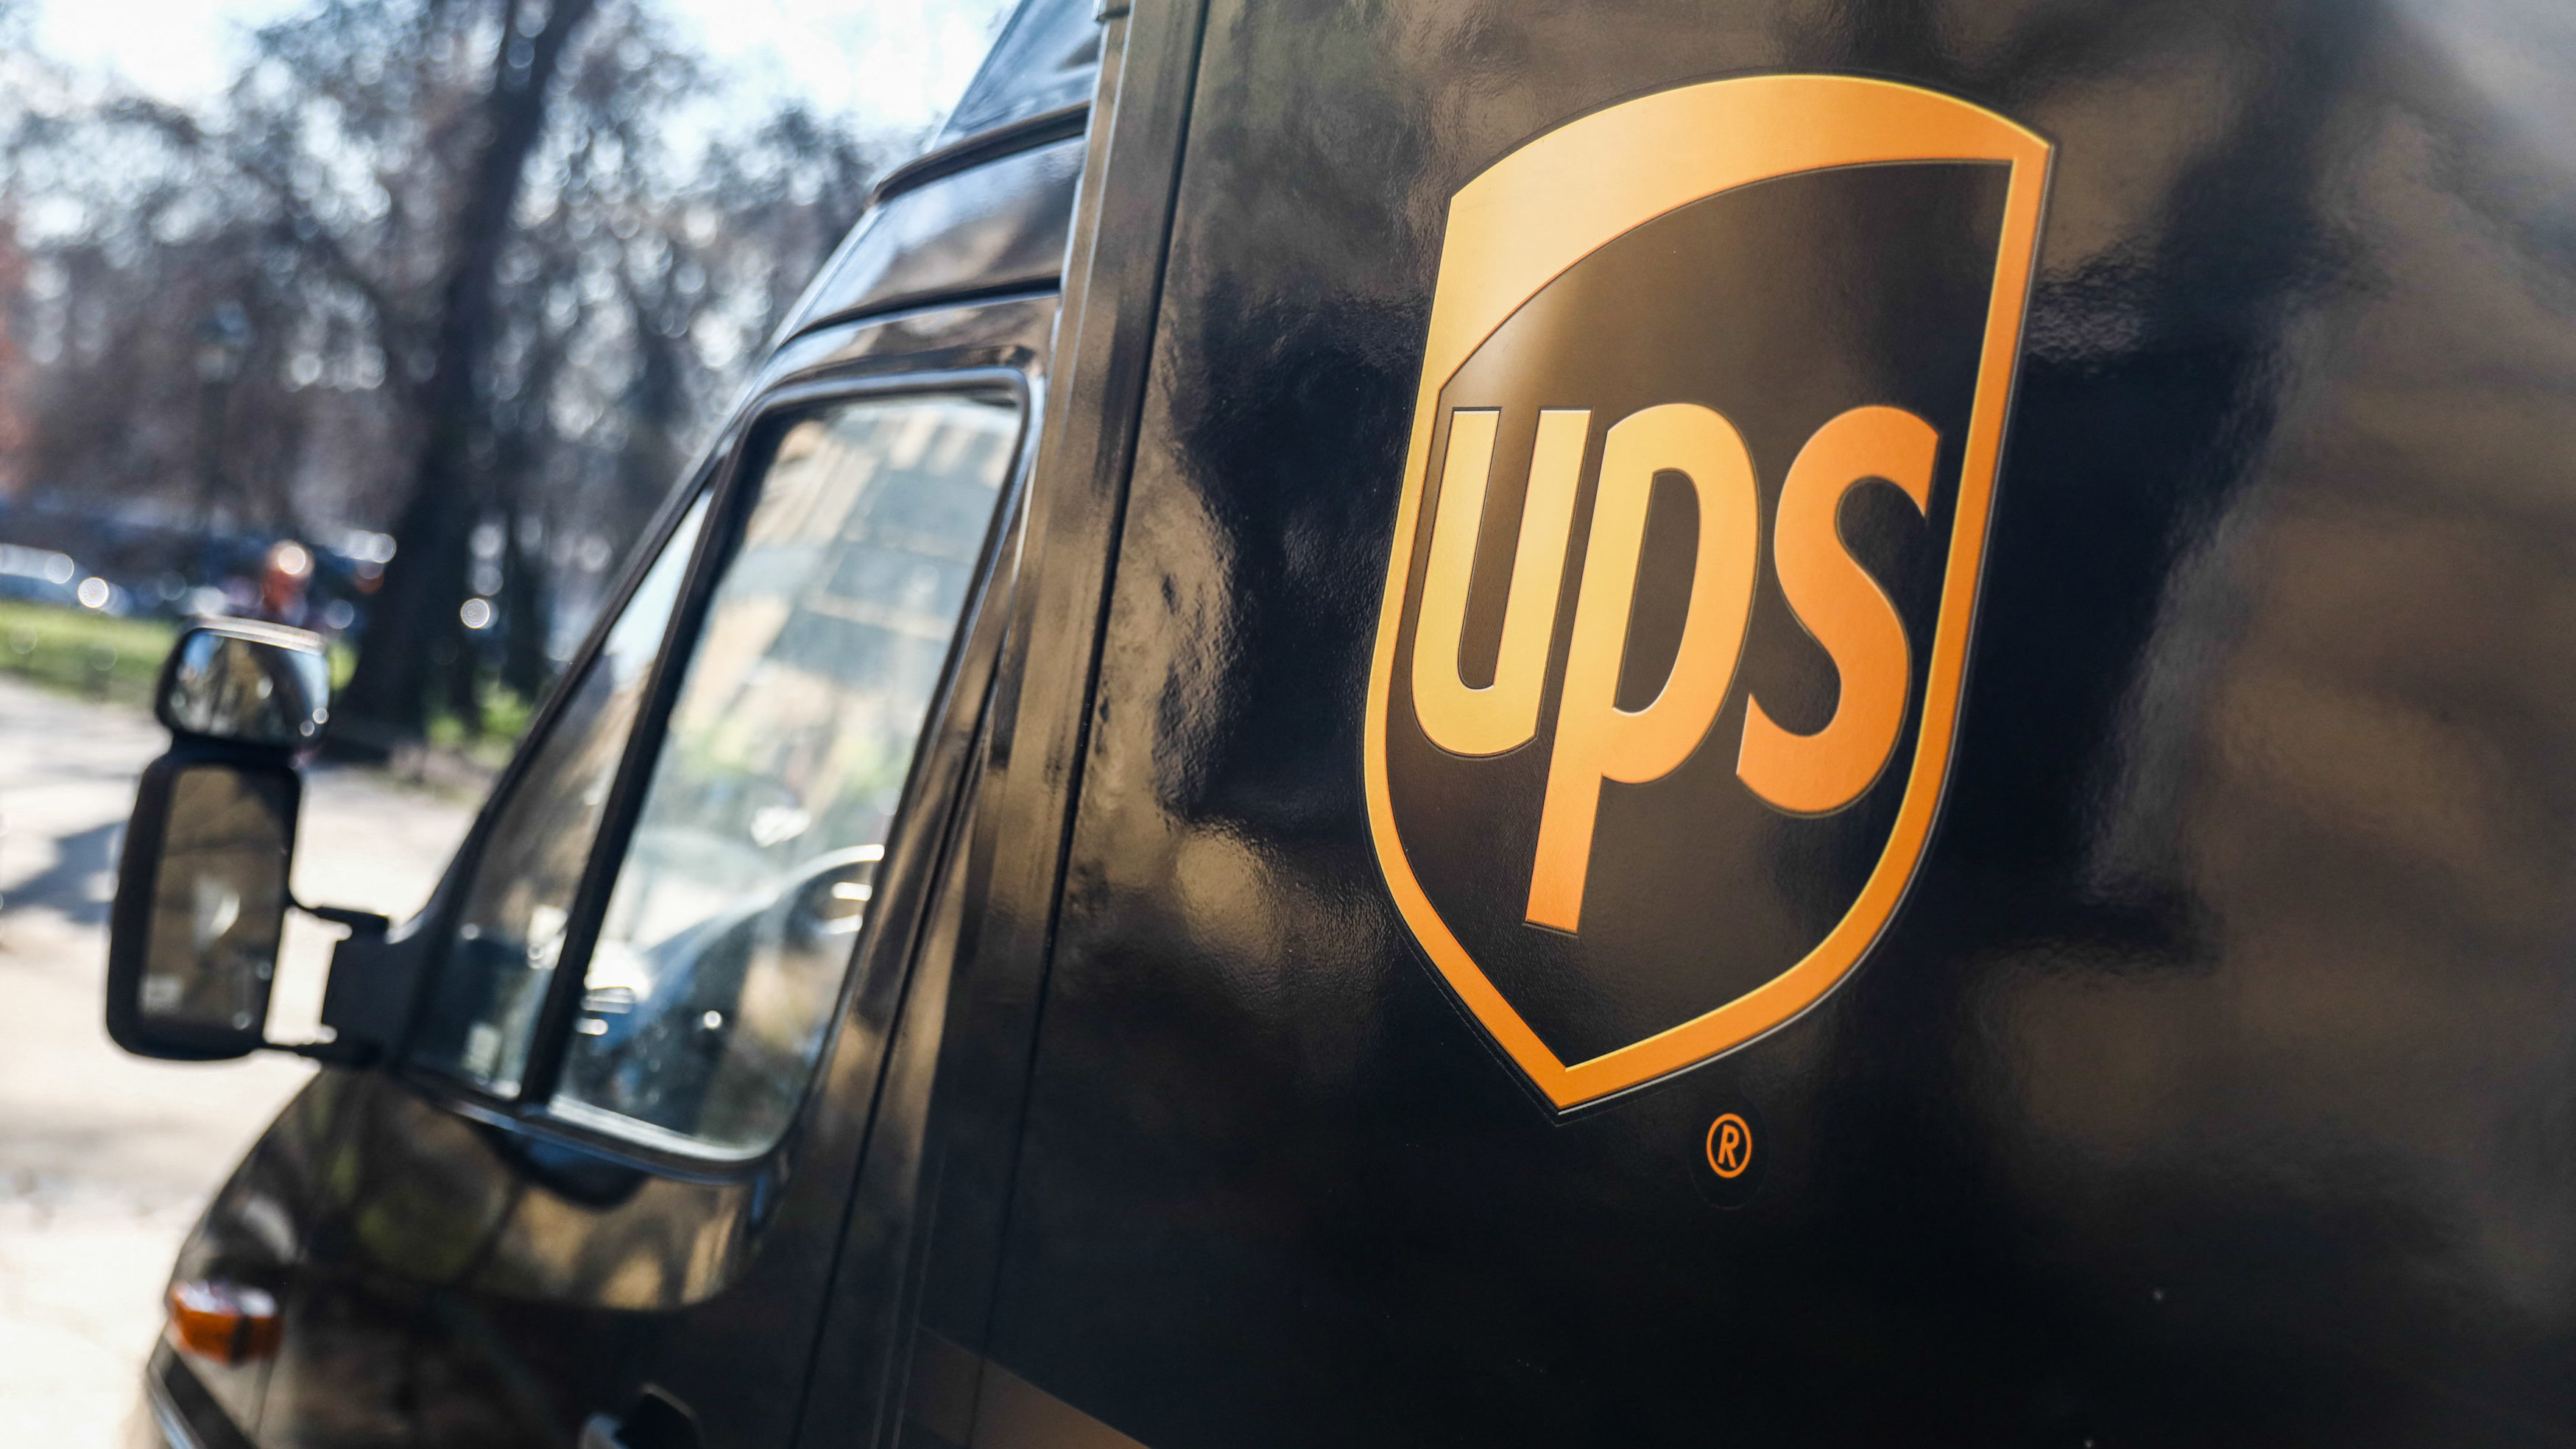 Elsírta magát az UPS-futár, amikor meglátta, mivel várják a kisvárosban